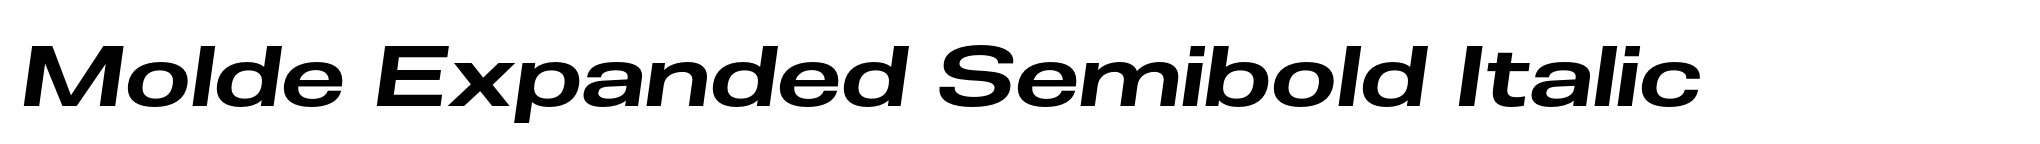 Molde Expanded Semibold Italic image